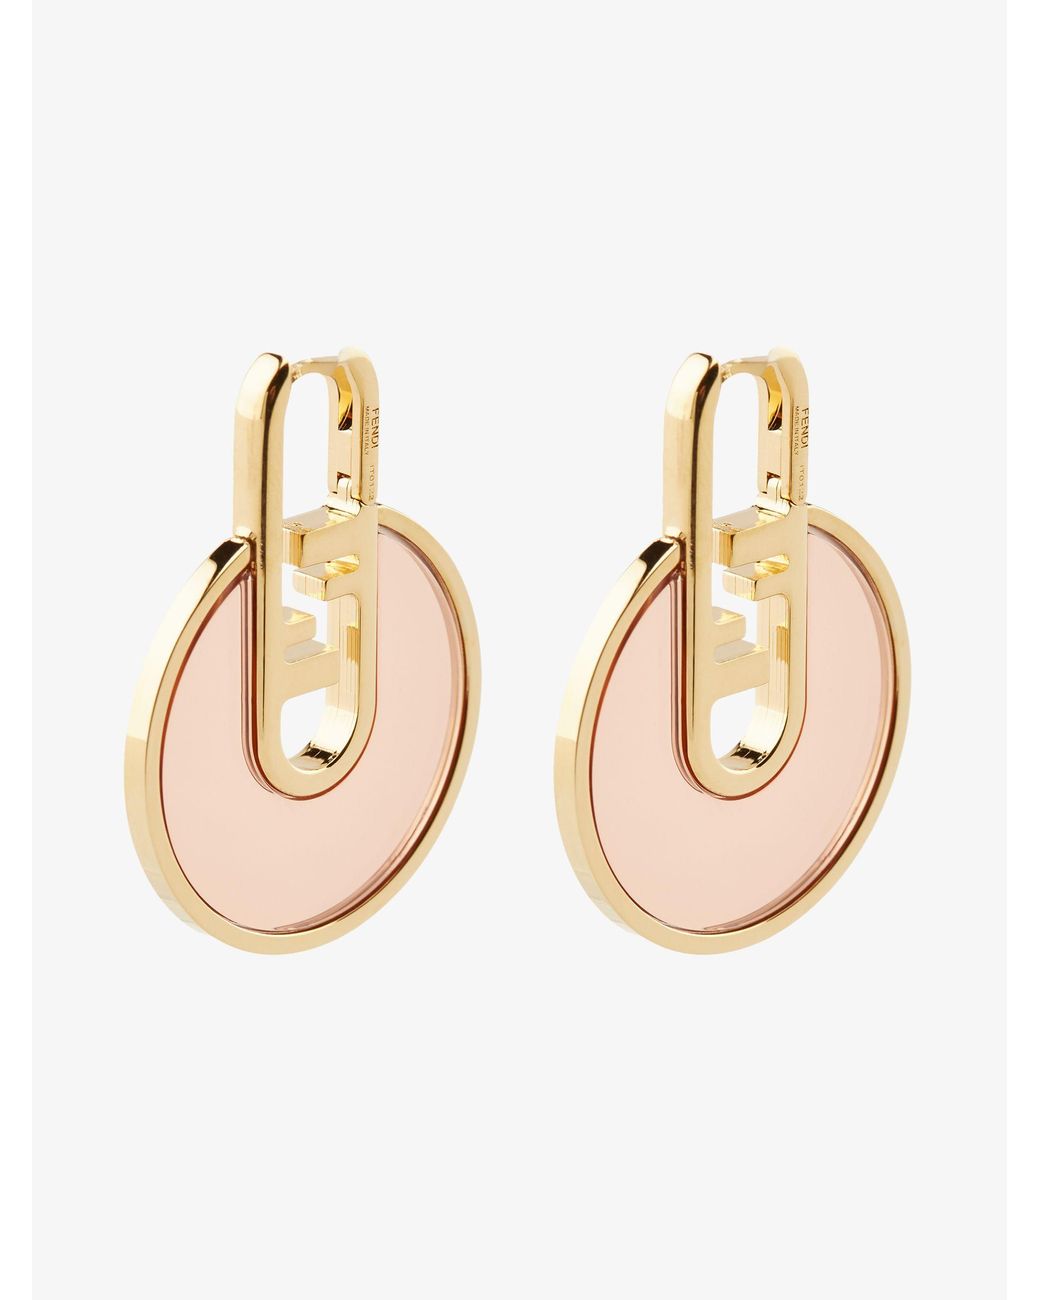 Gold Hoop Earrings Set – Coco Wagner Design